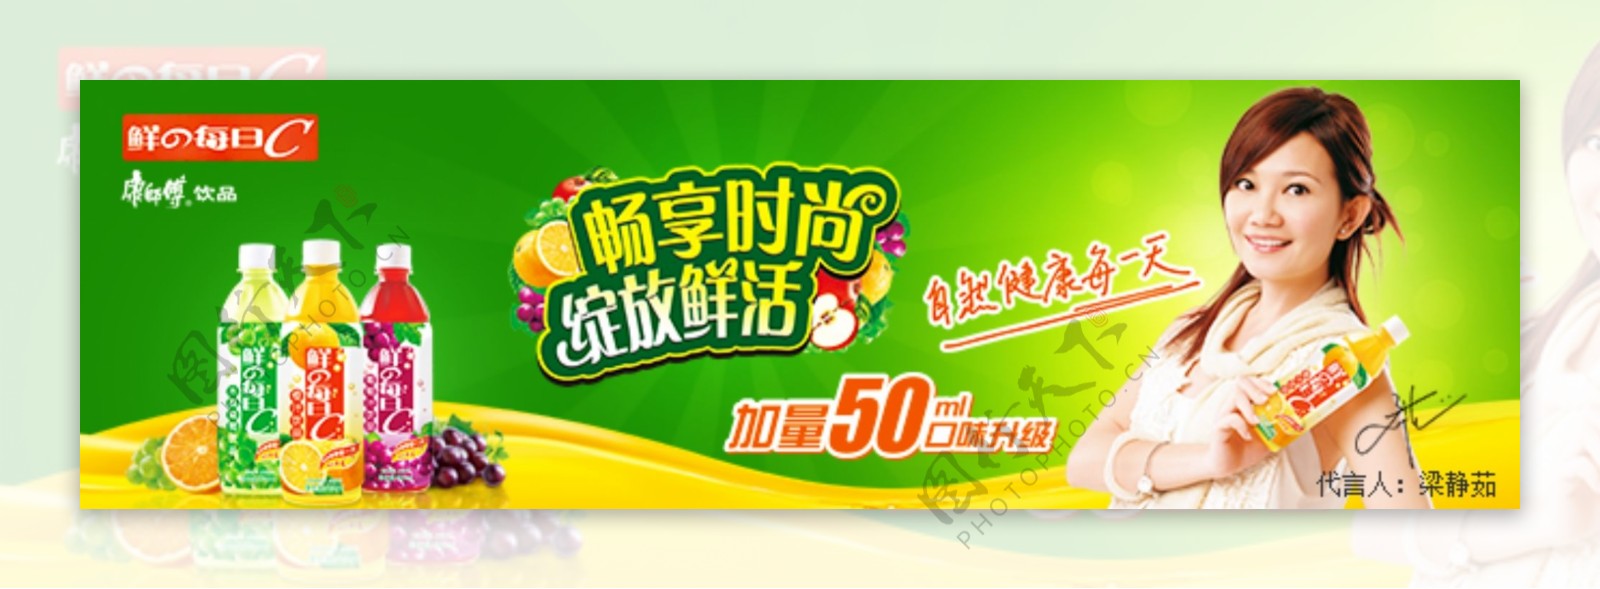 电商饮料果汁banner图广告